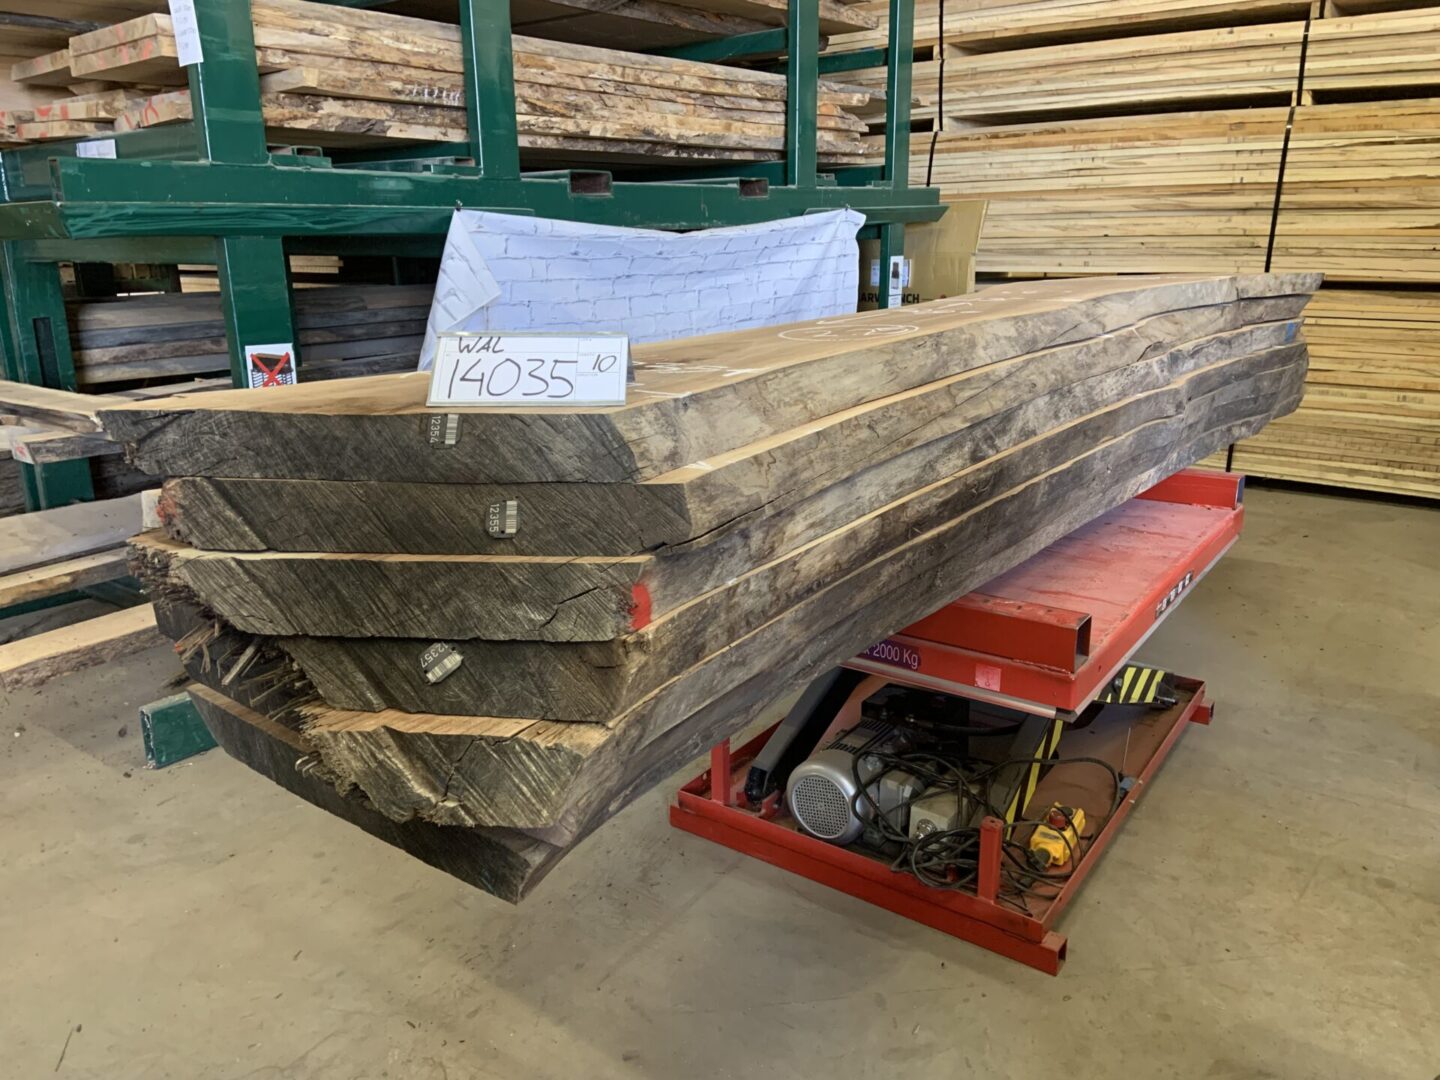 A Bundle of Walnut Logs 14035, Ten to Eleven Feet